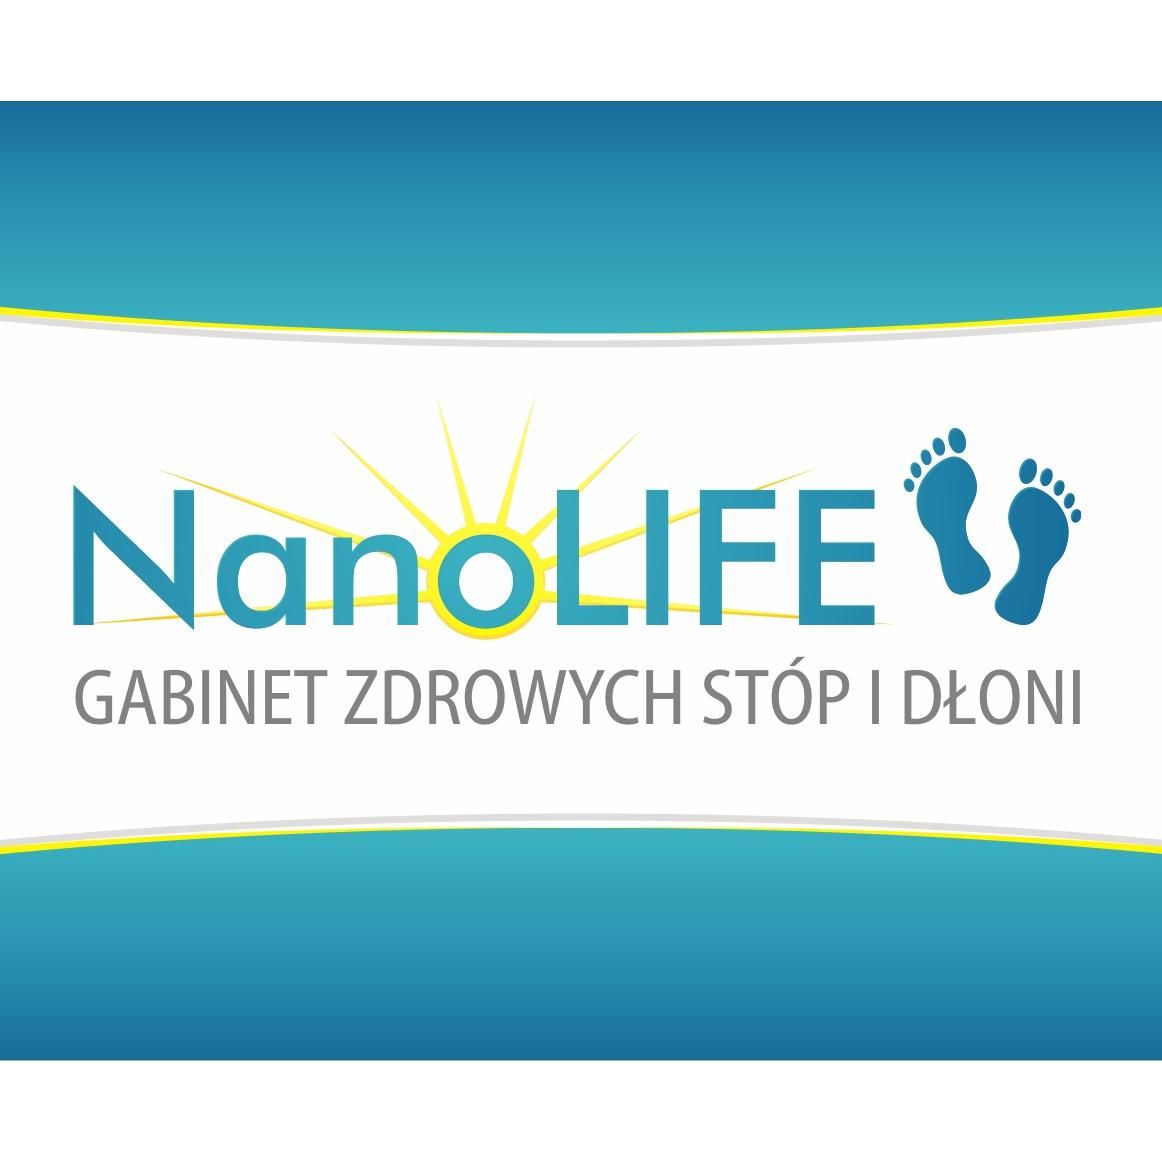 NanoLIFE Gabinet Zdrowych Stóp i Dłoni, Księżnej Ludgardy 16, 71-807, Szczecin